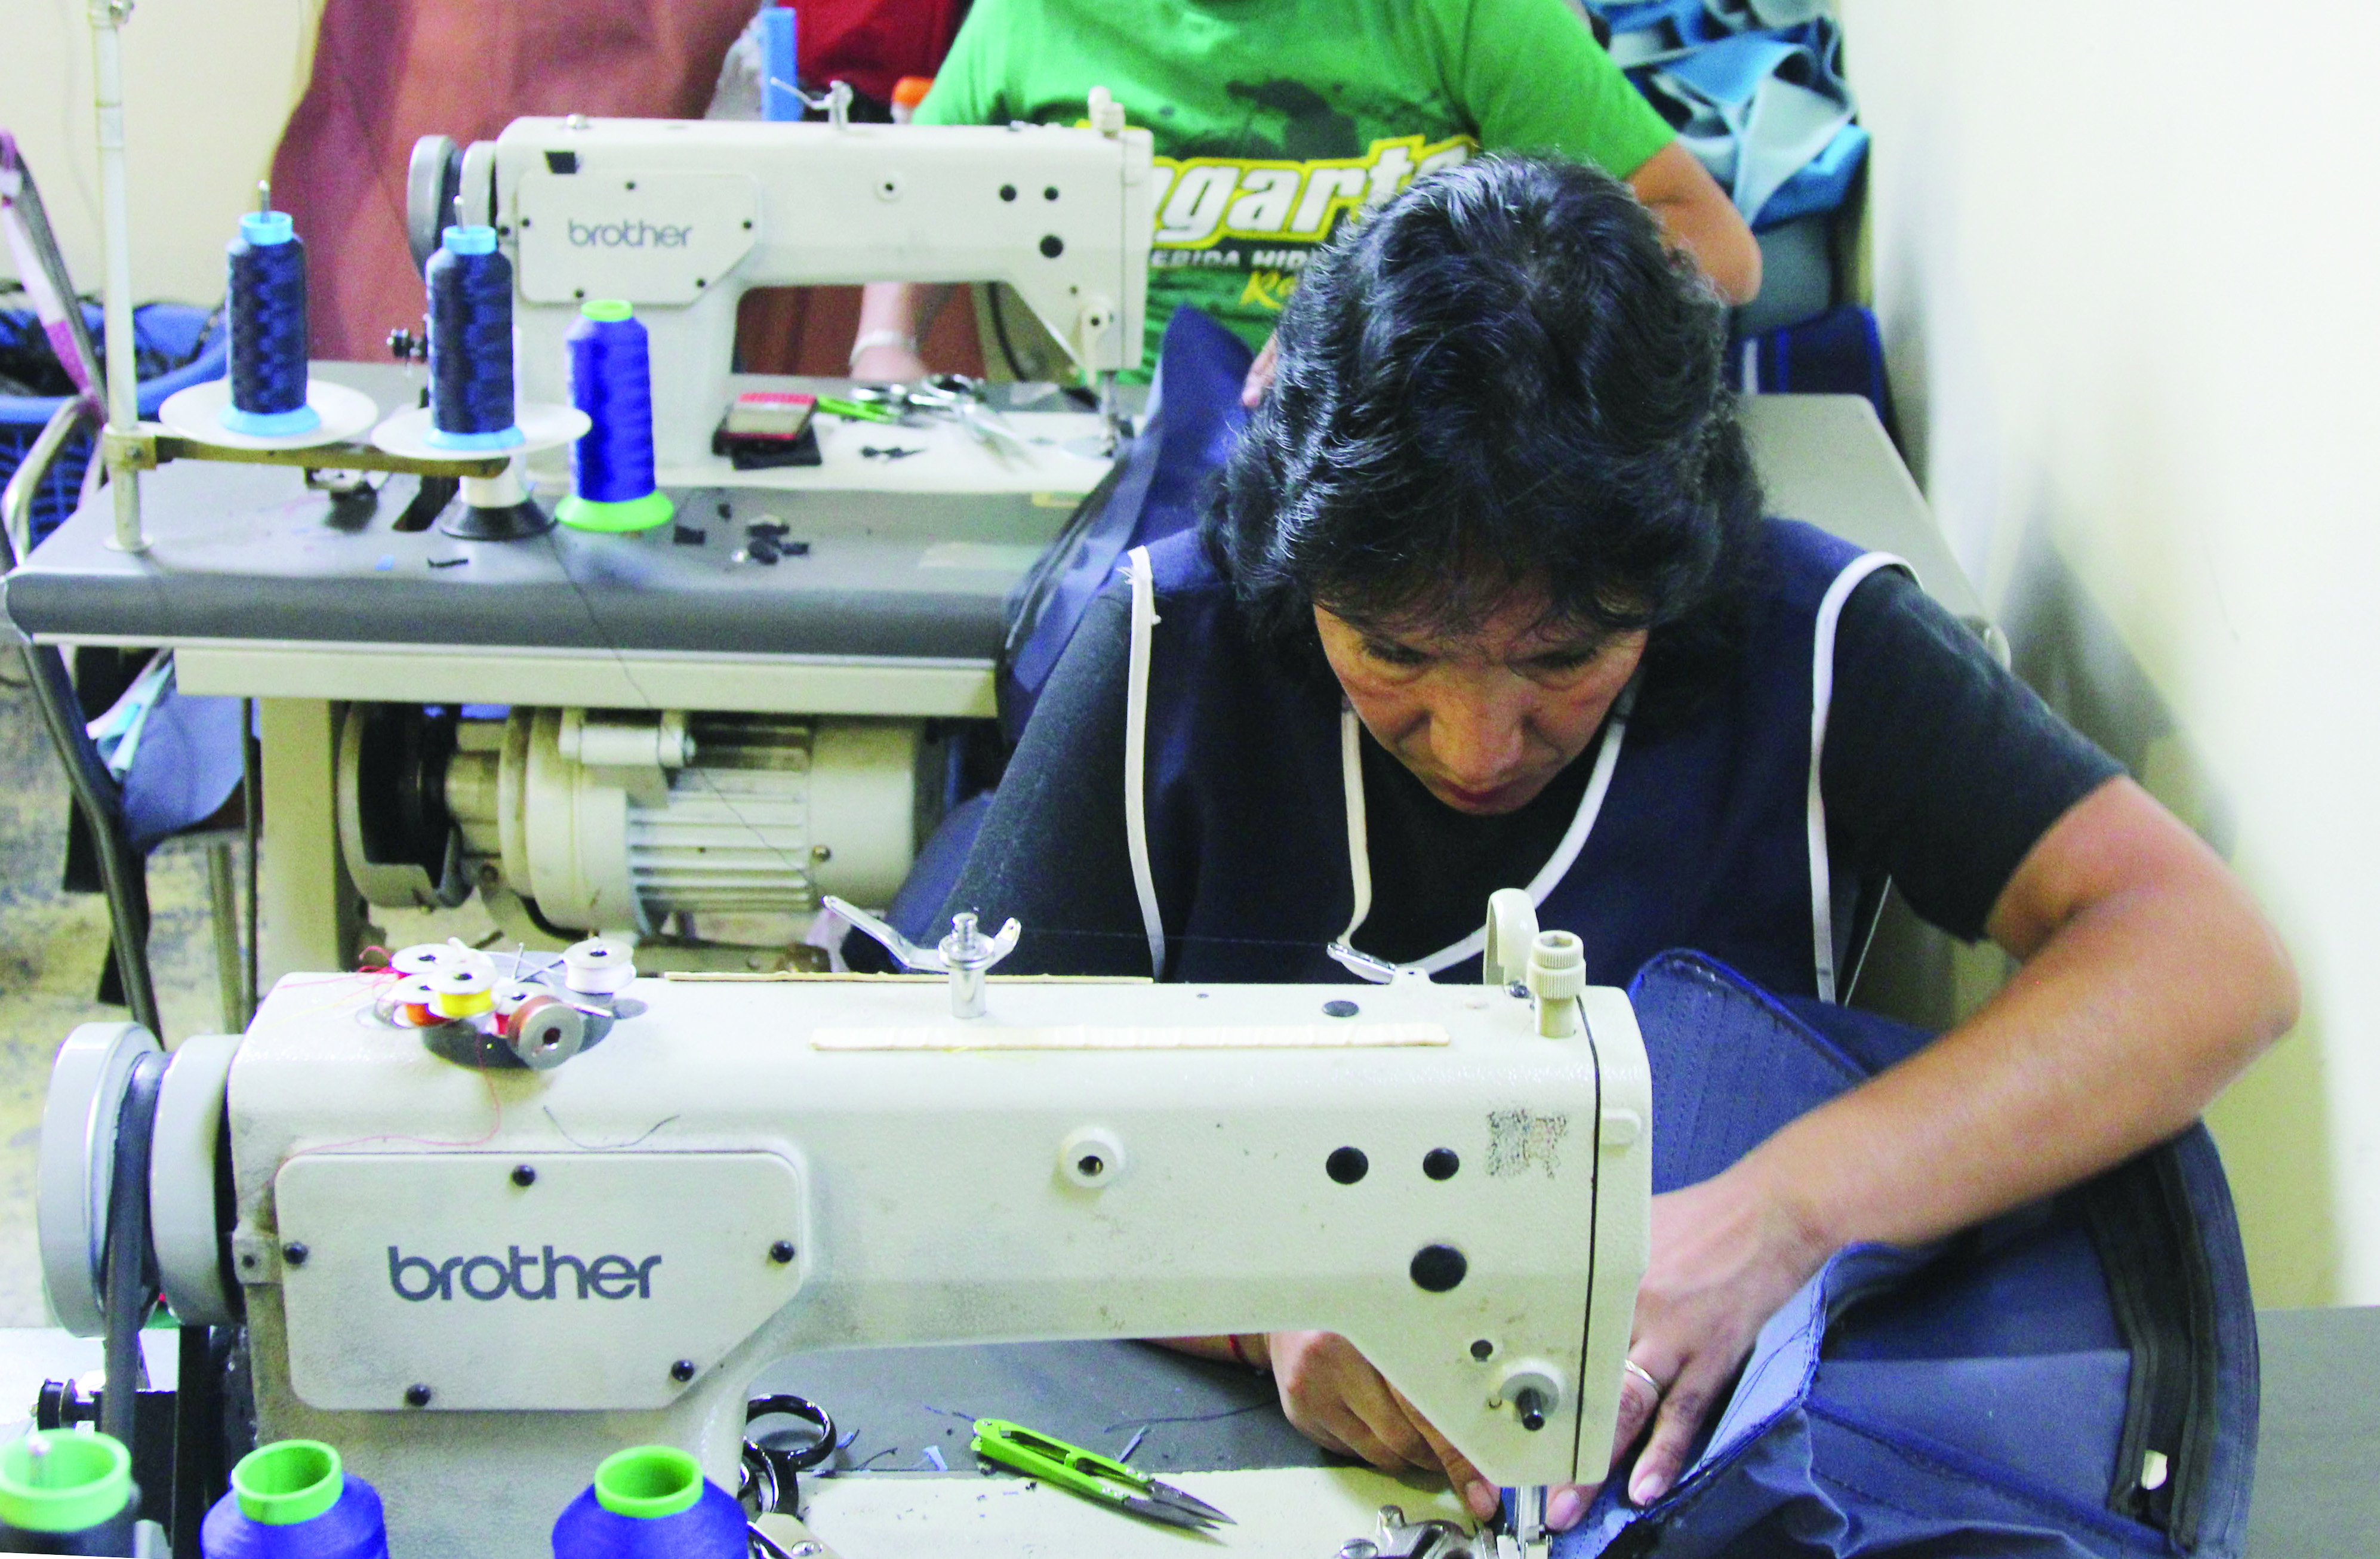 Implementar tecnología, reto de la industria vestido | NTR Guadalajara